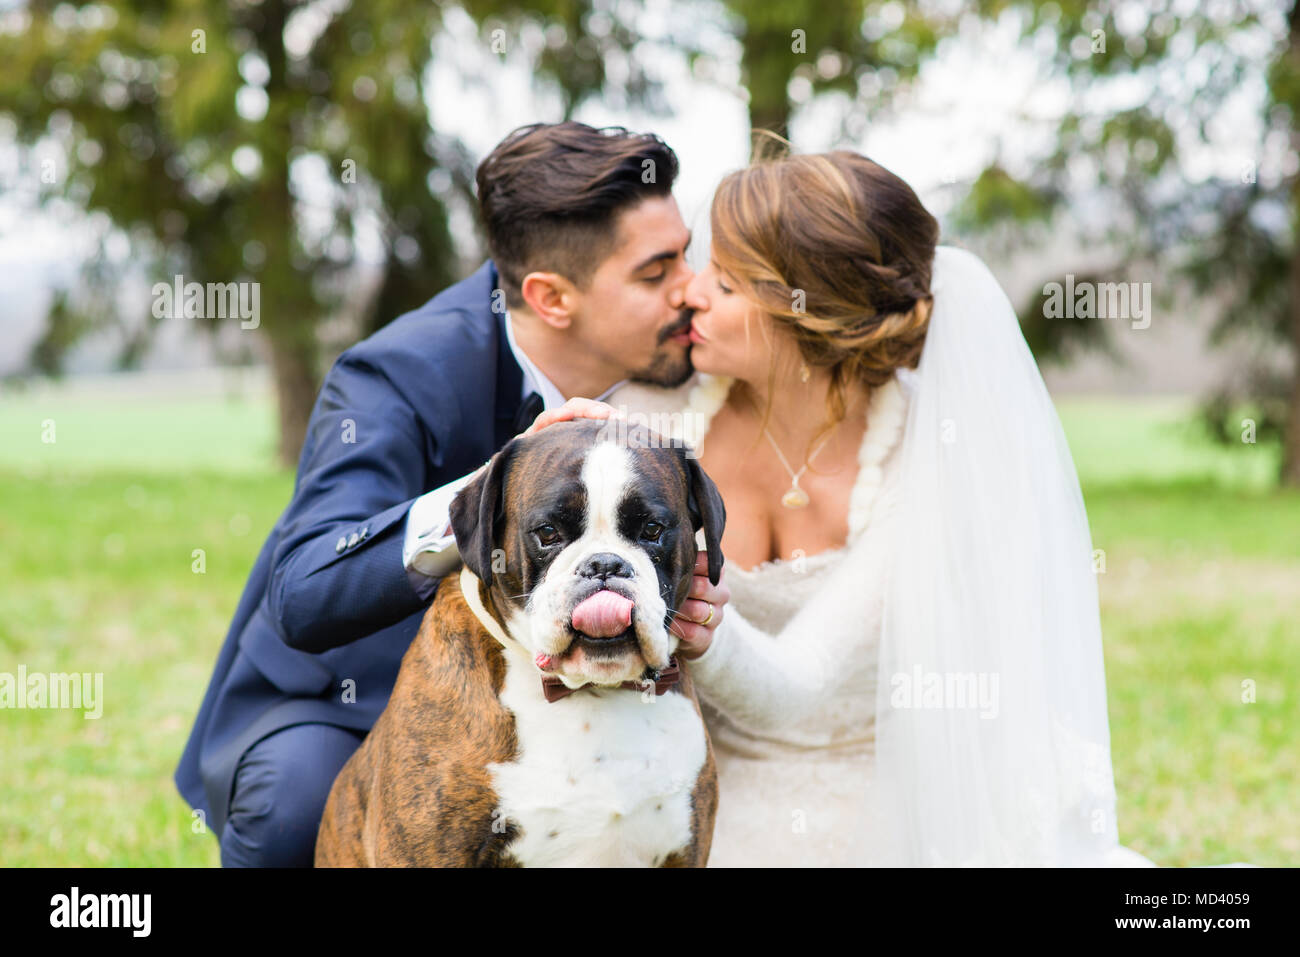 Portrait de la jeune mariée et le jeune marié avec leur chien Banque D'Images